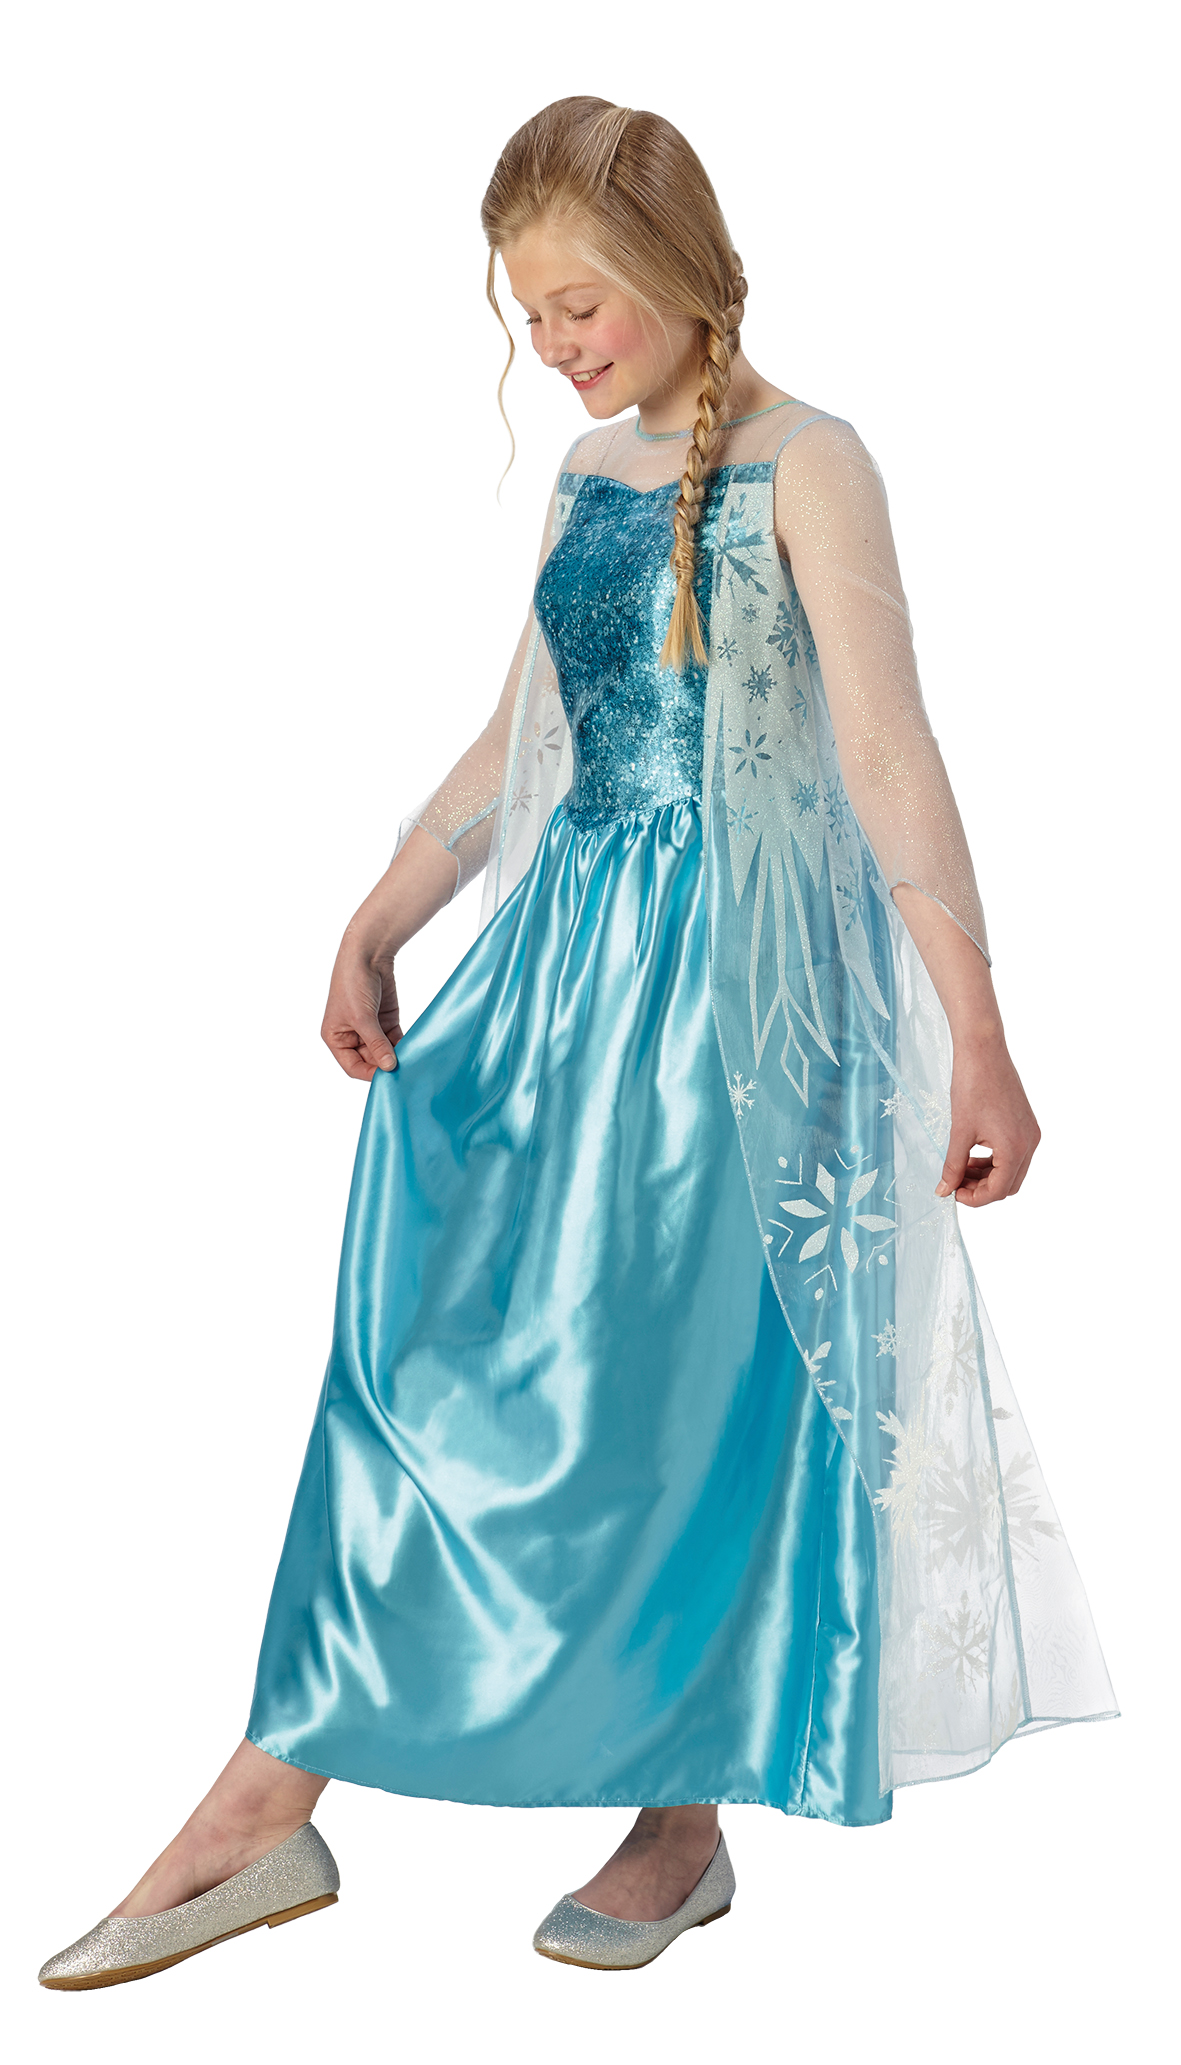 Rubies 3620976 - Elsa Classic, 9 - 14 Jahre Eiskönigin